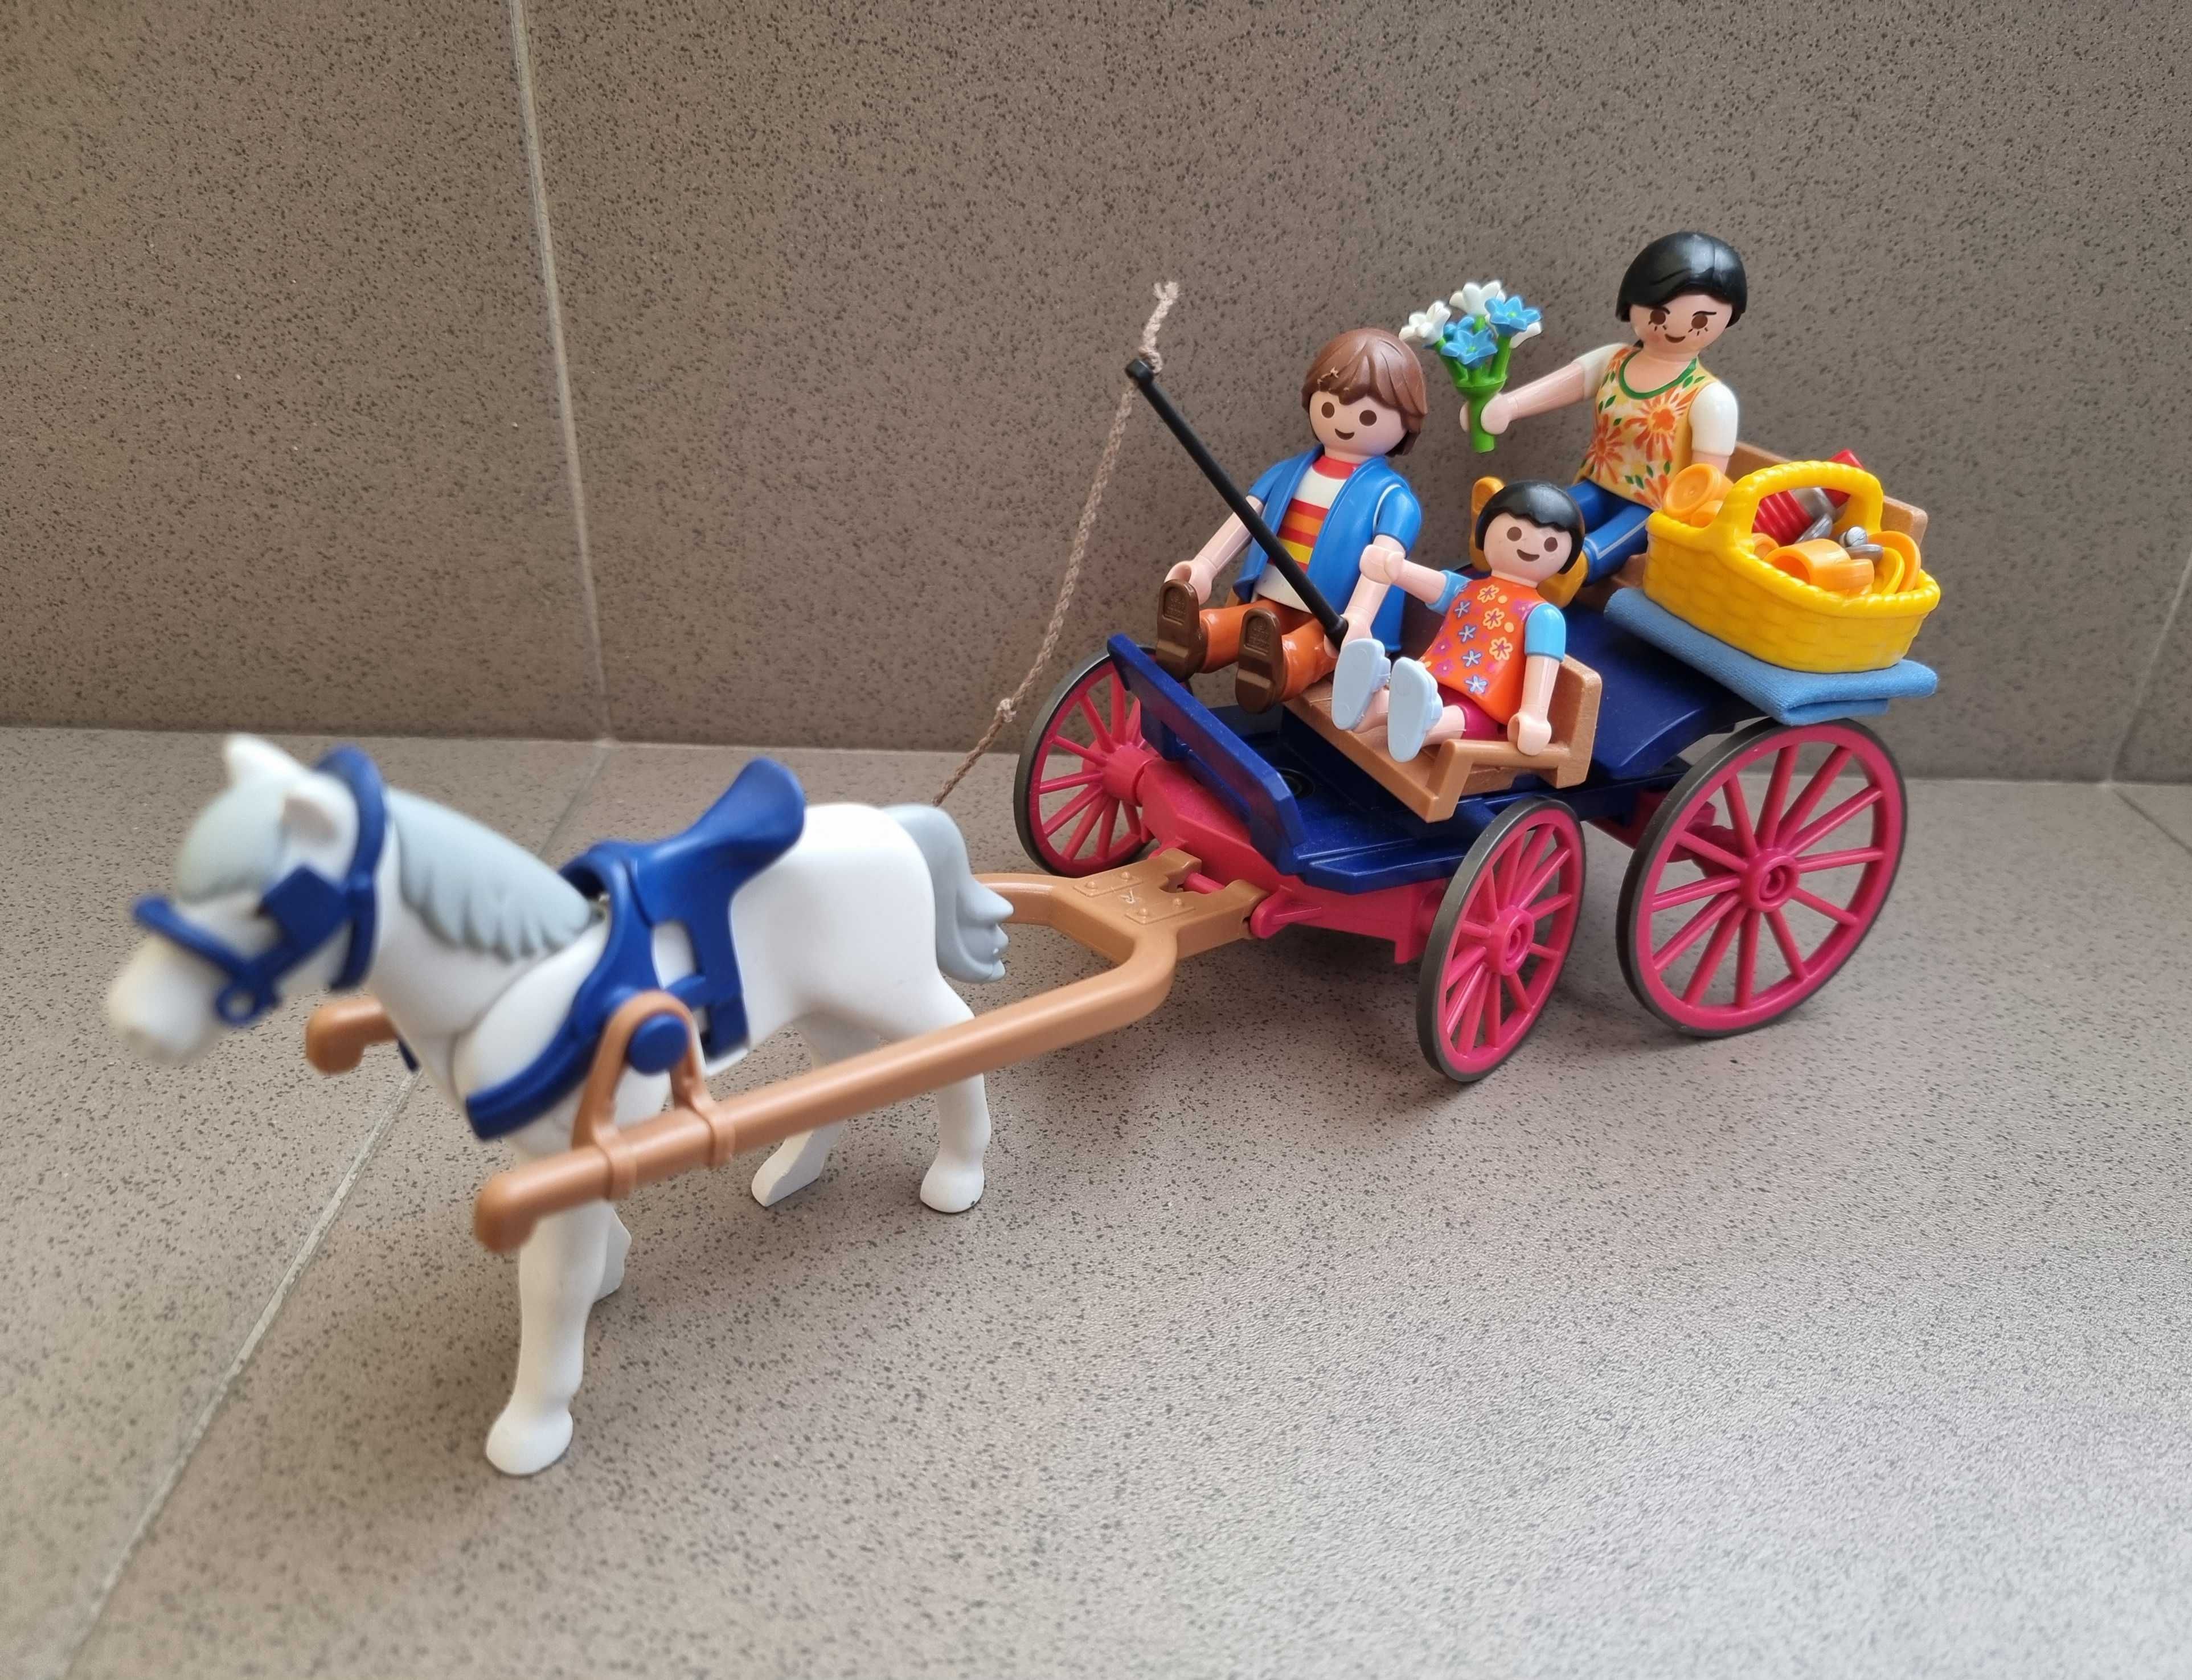 Playmobil 5226 Picnick in familie cu trasura cu cai